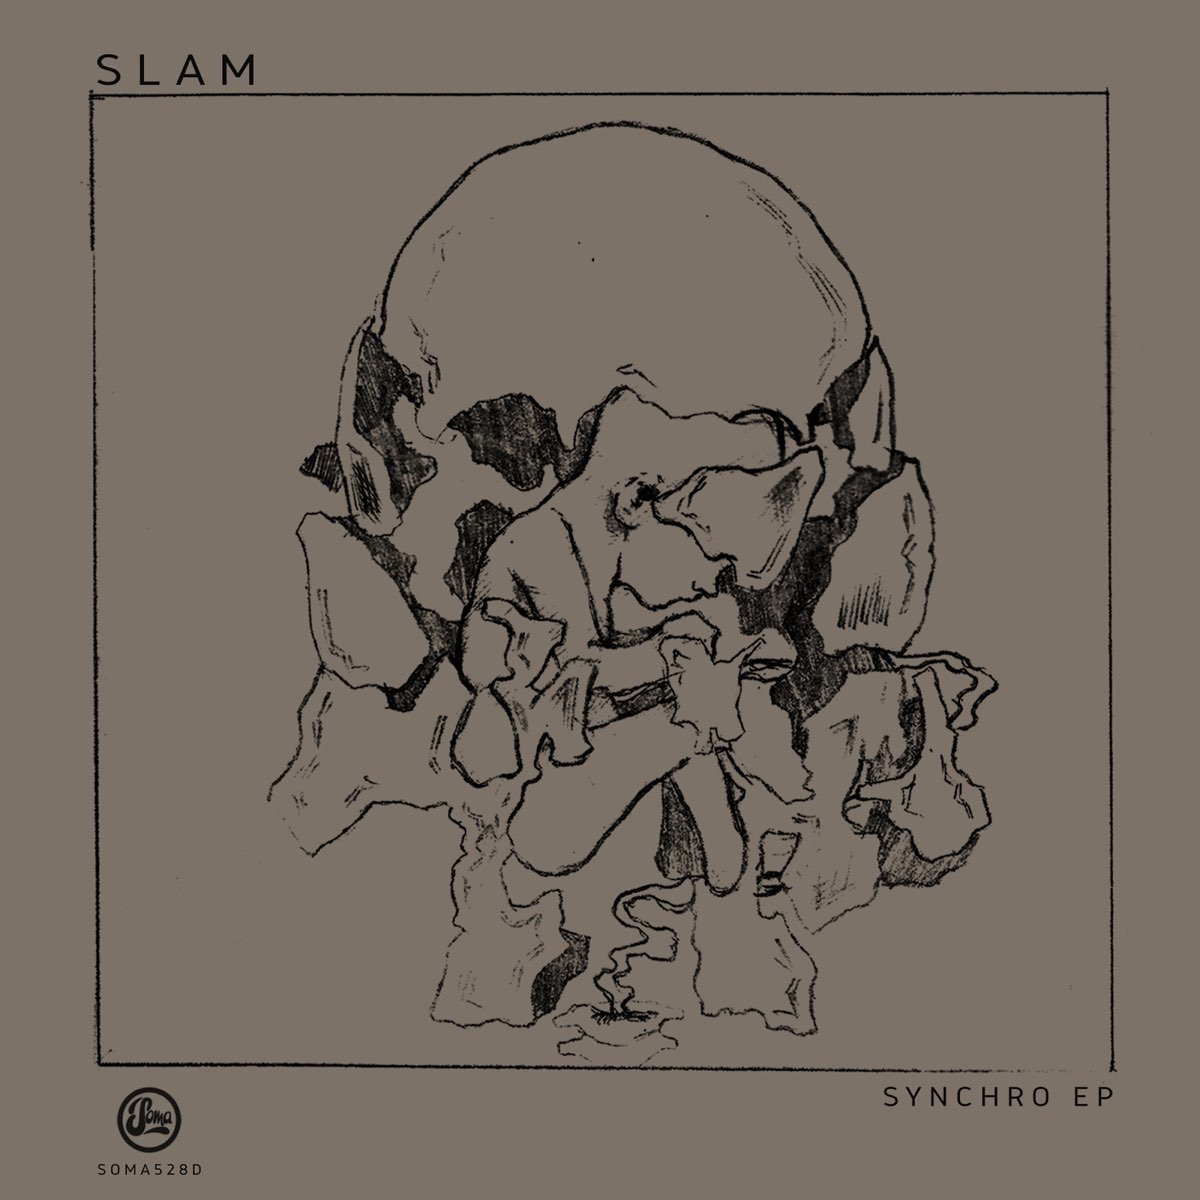 Slamの「Synchro - EP」をApple Musicで